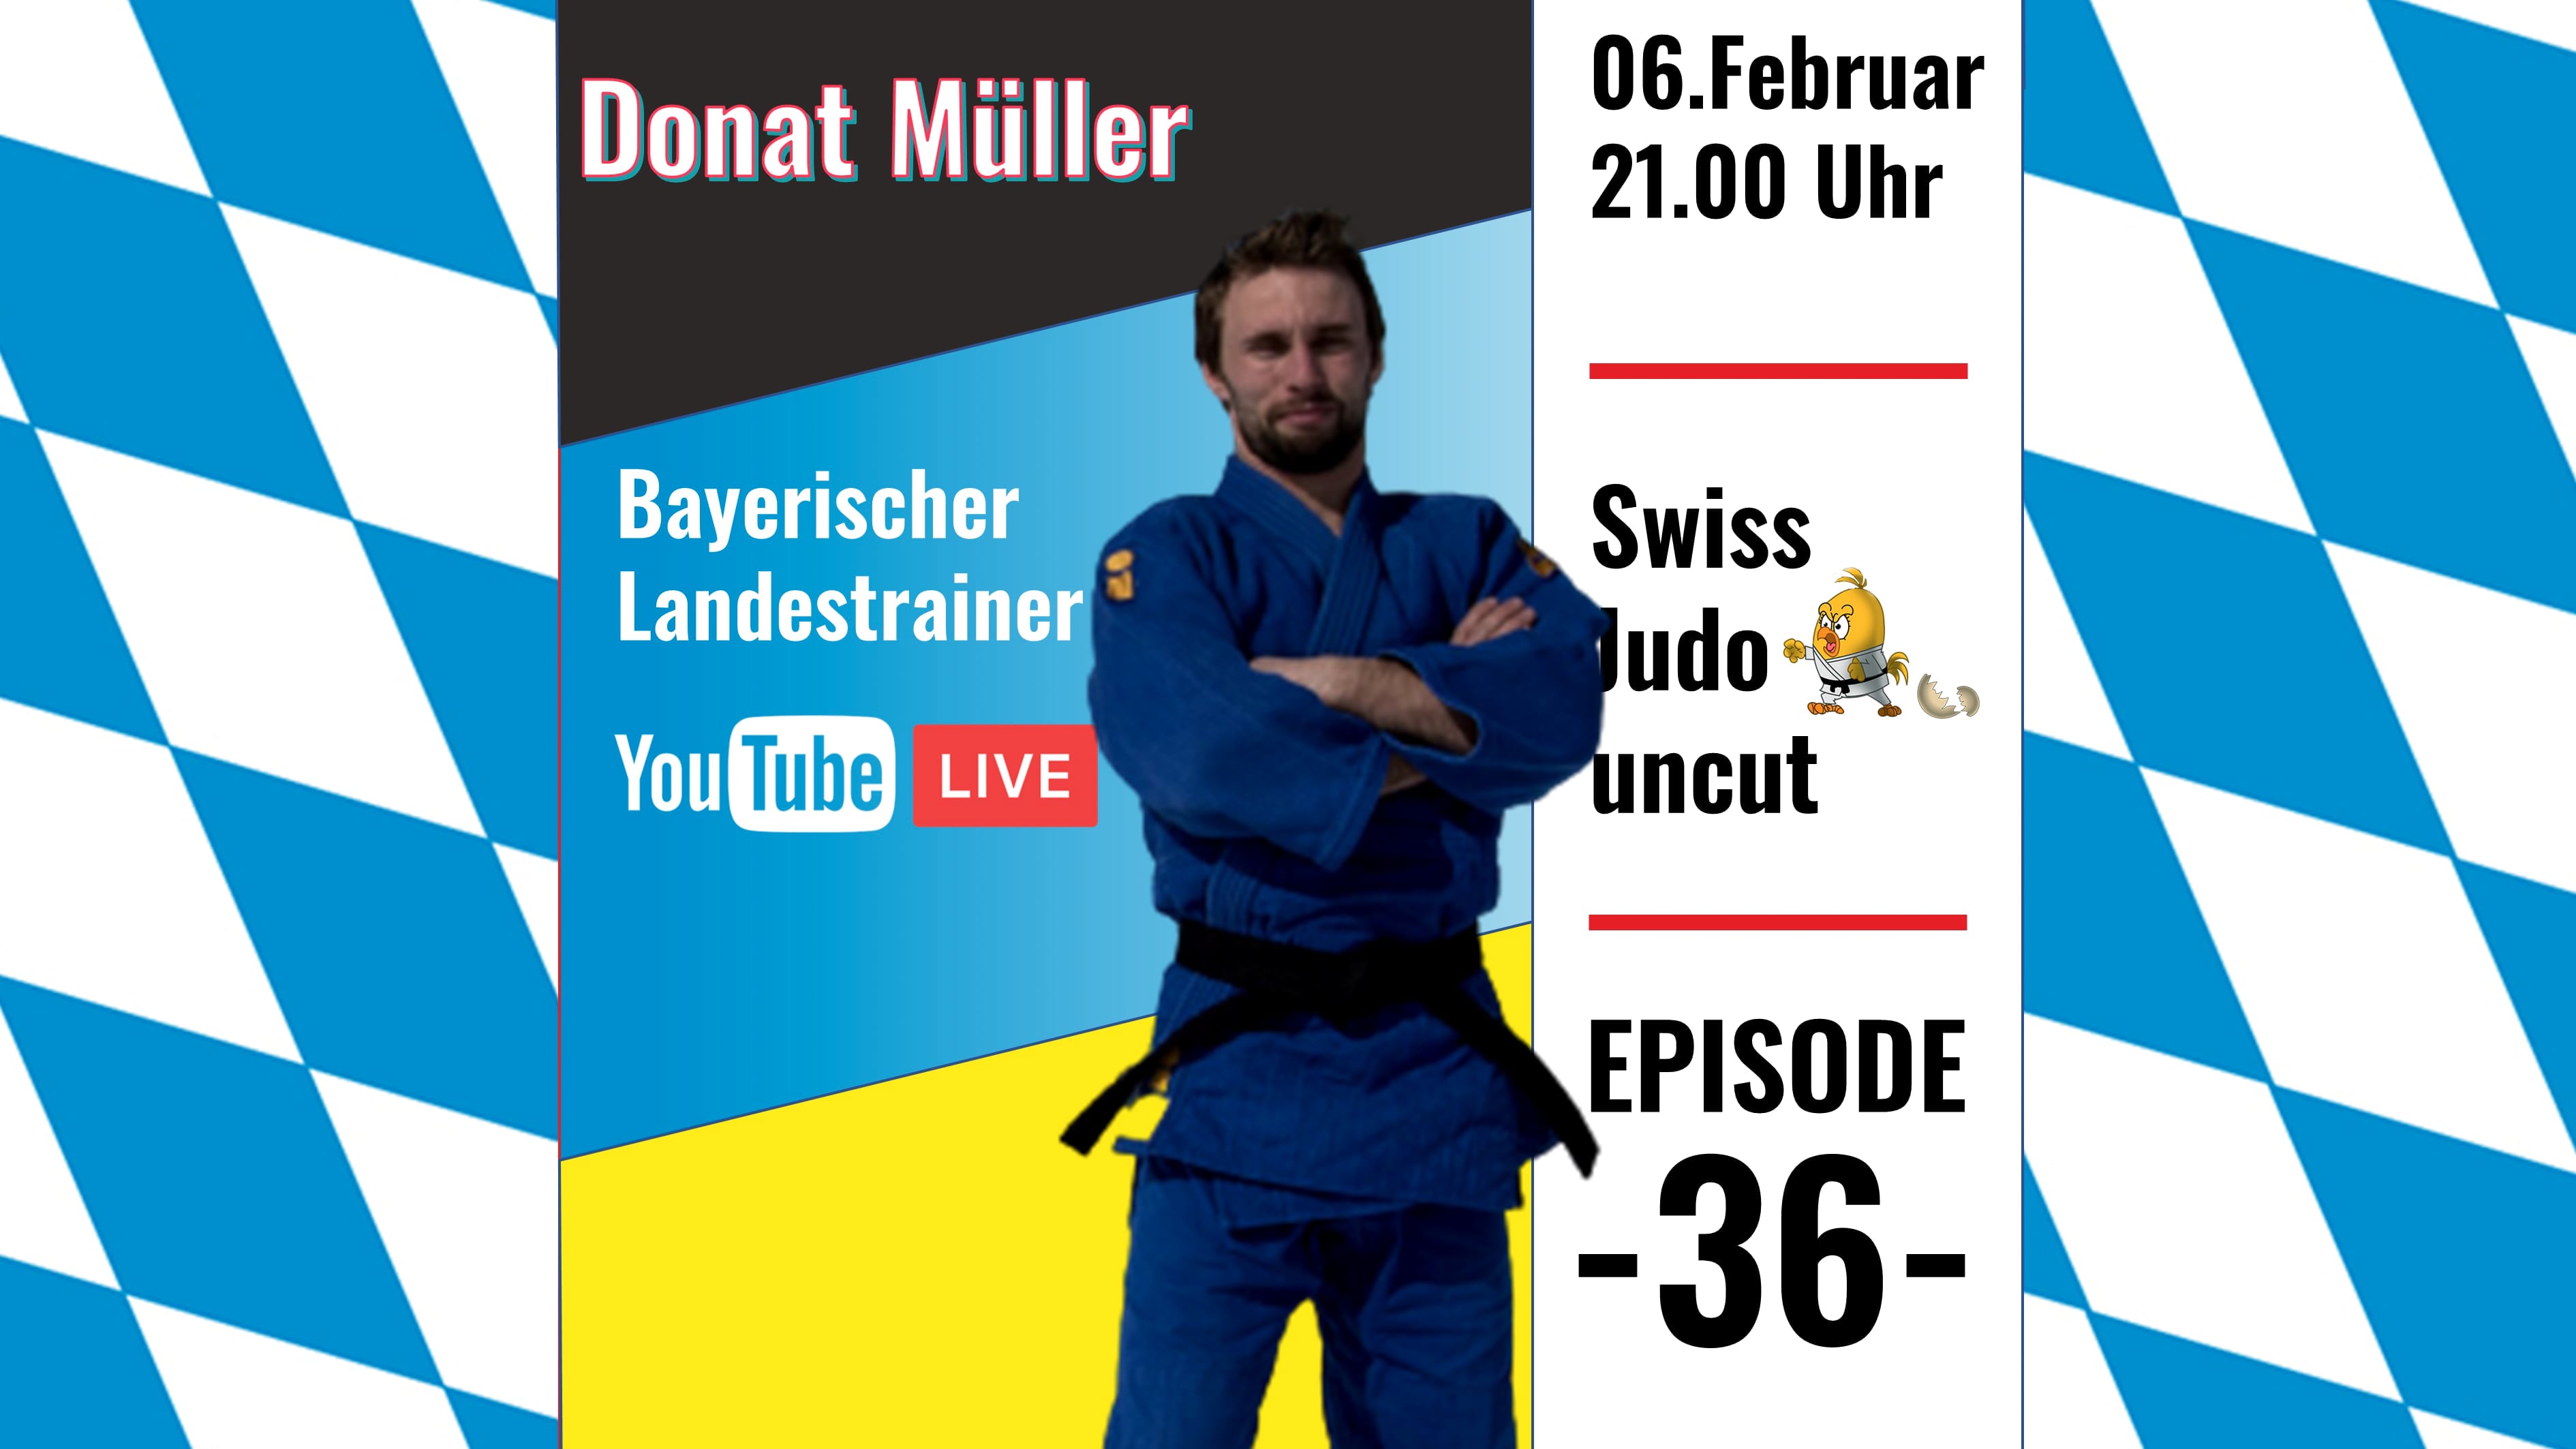 Bayerischer Landestrainer Donat Müller, live bei uns im Studio